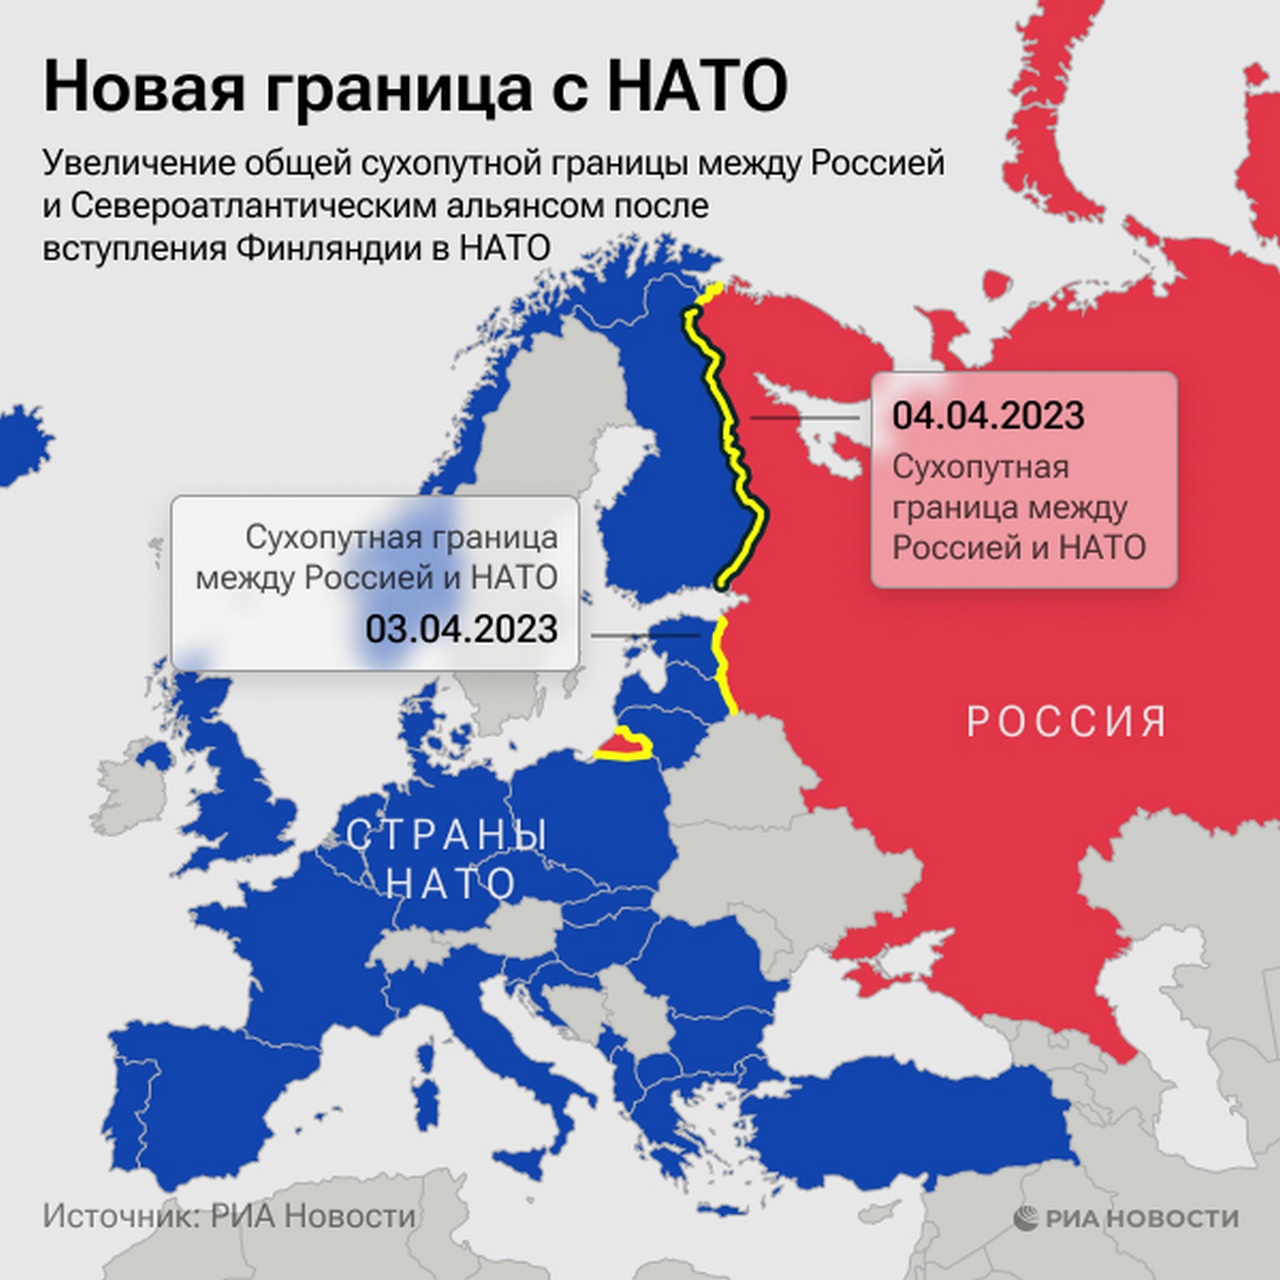 Увеличение границы между Россией и Североатлантическим альянсом после вступления Финляндии в НАТО 4 апреля 2023 г.